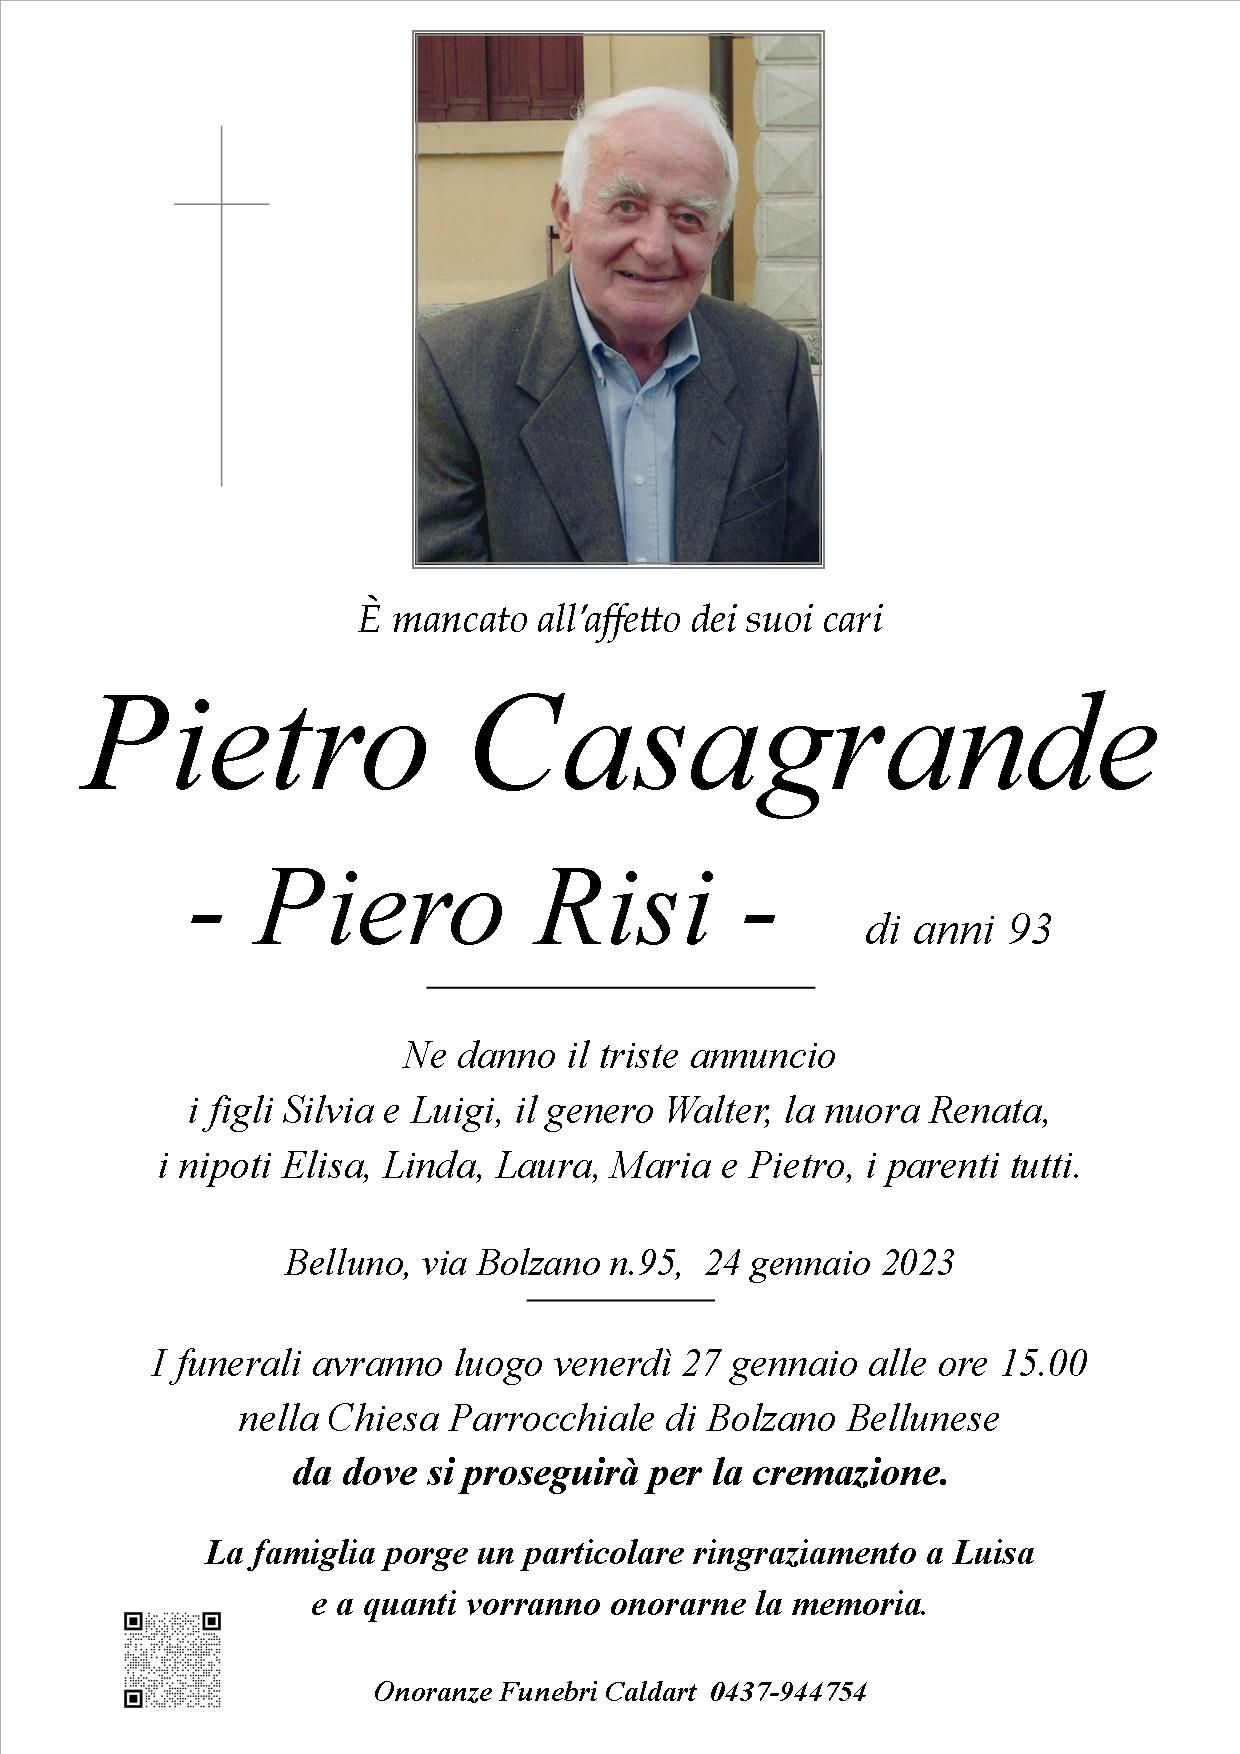 Pietro Casagrande